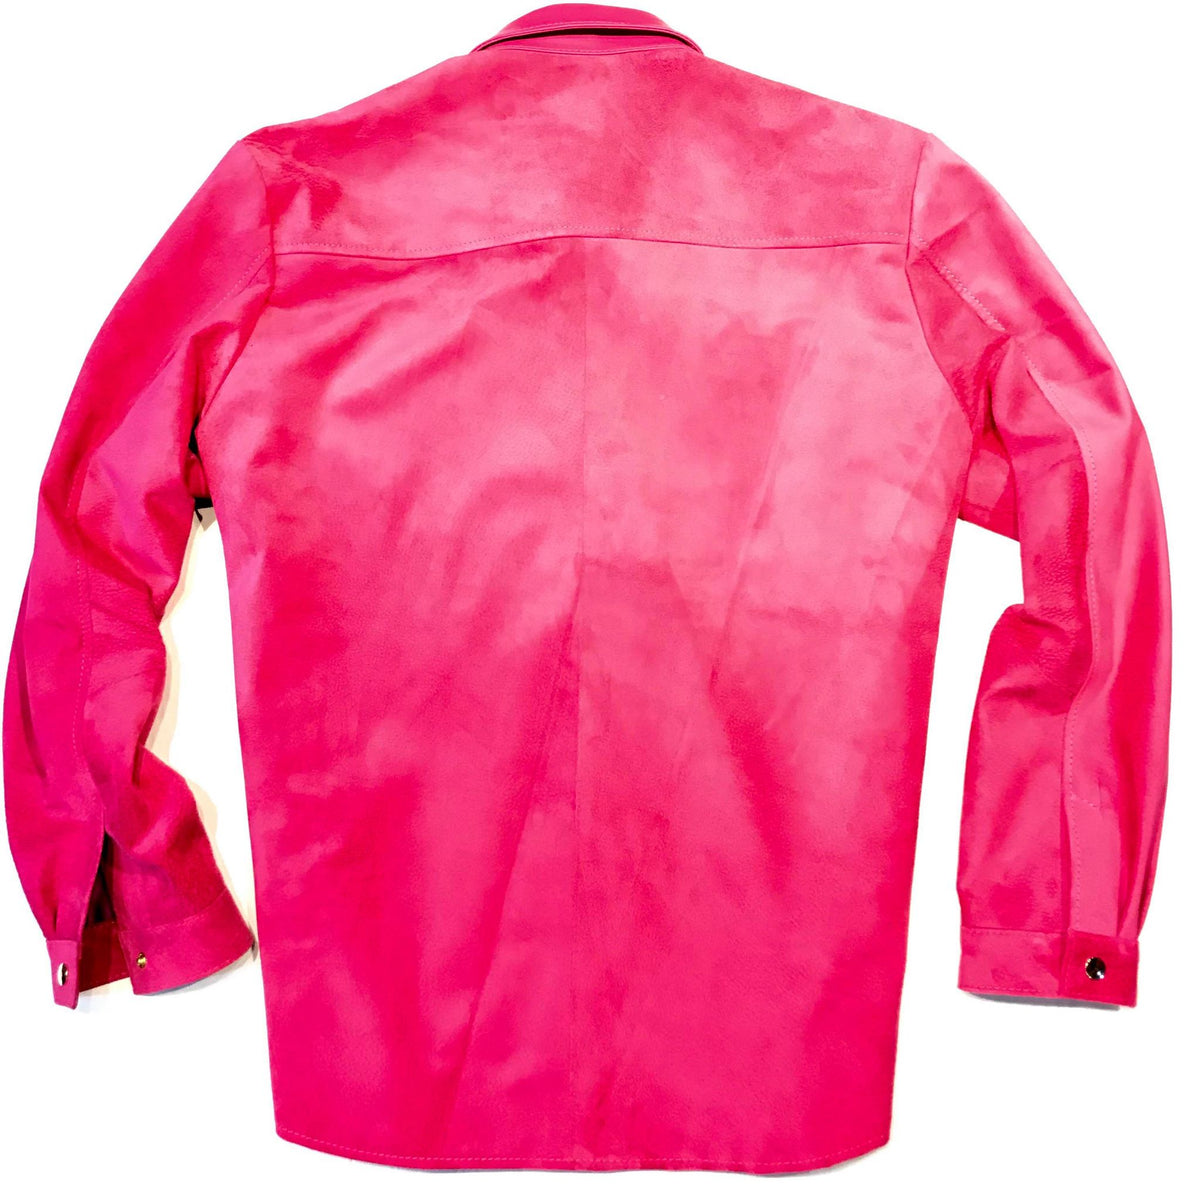 Kashani Pink Suede Button Up Shirt - Dudes Boutique